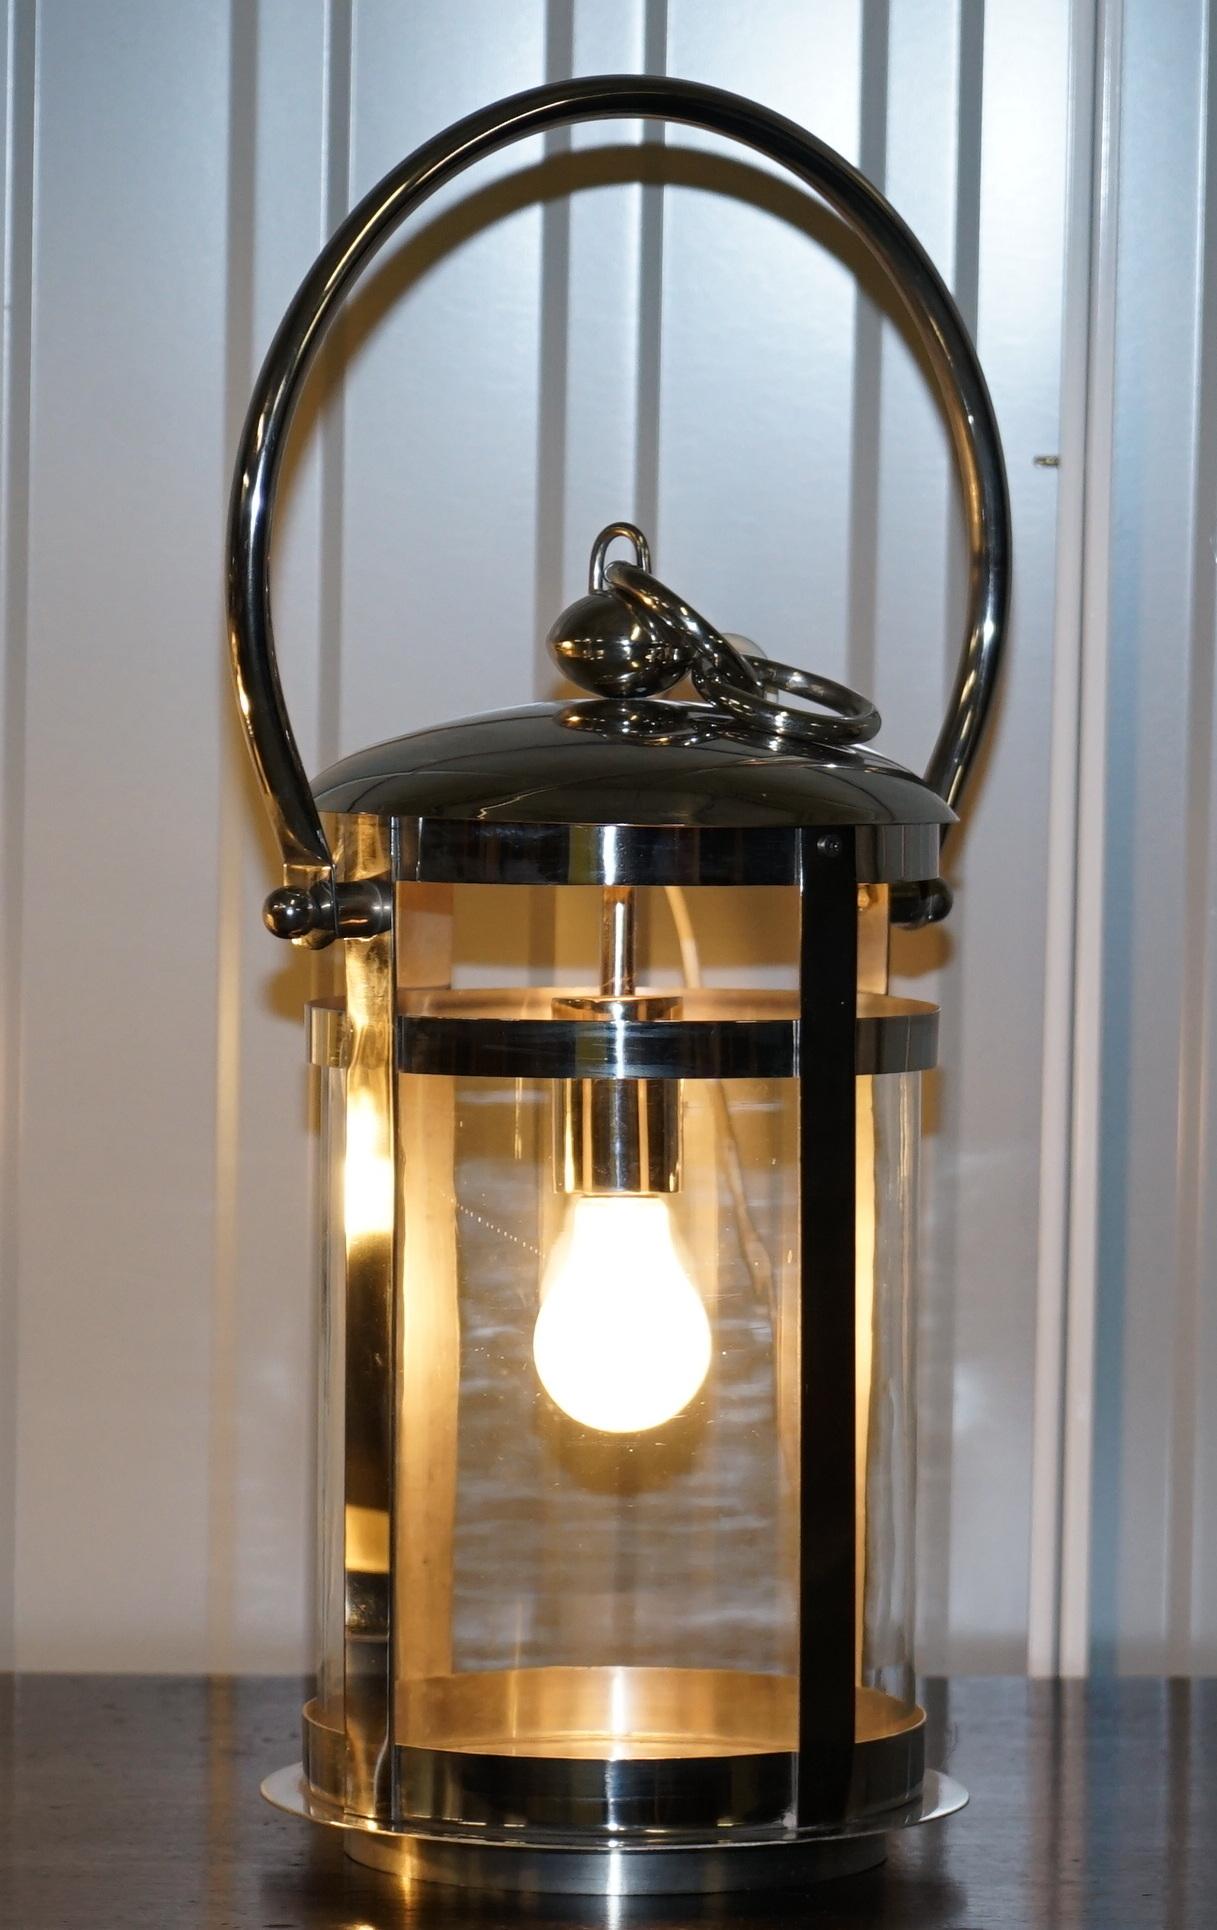 Wir freuen uns, dieses atemberaubende Paar hochwertiger tragbarer Luminaire aus Chrom mit zylindrischen Glasschirmen zum Verkauf anbieten zu können, die als Hängelaternen dienen.

Es handelt sich um ein Paar Laternen von außergewöhnlicher